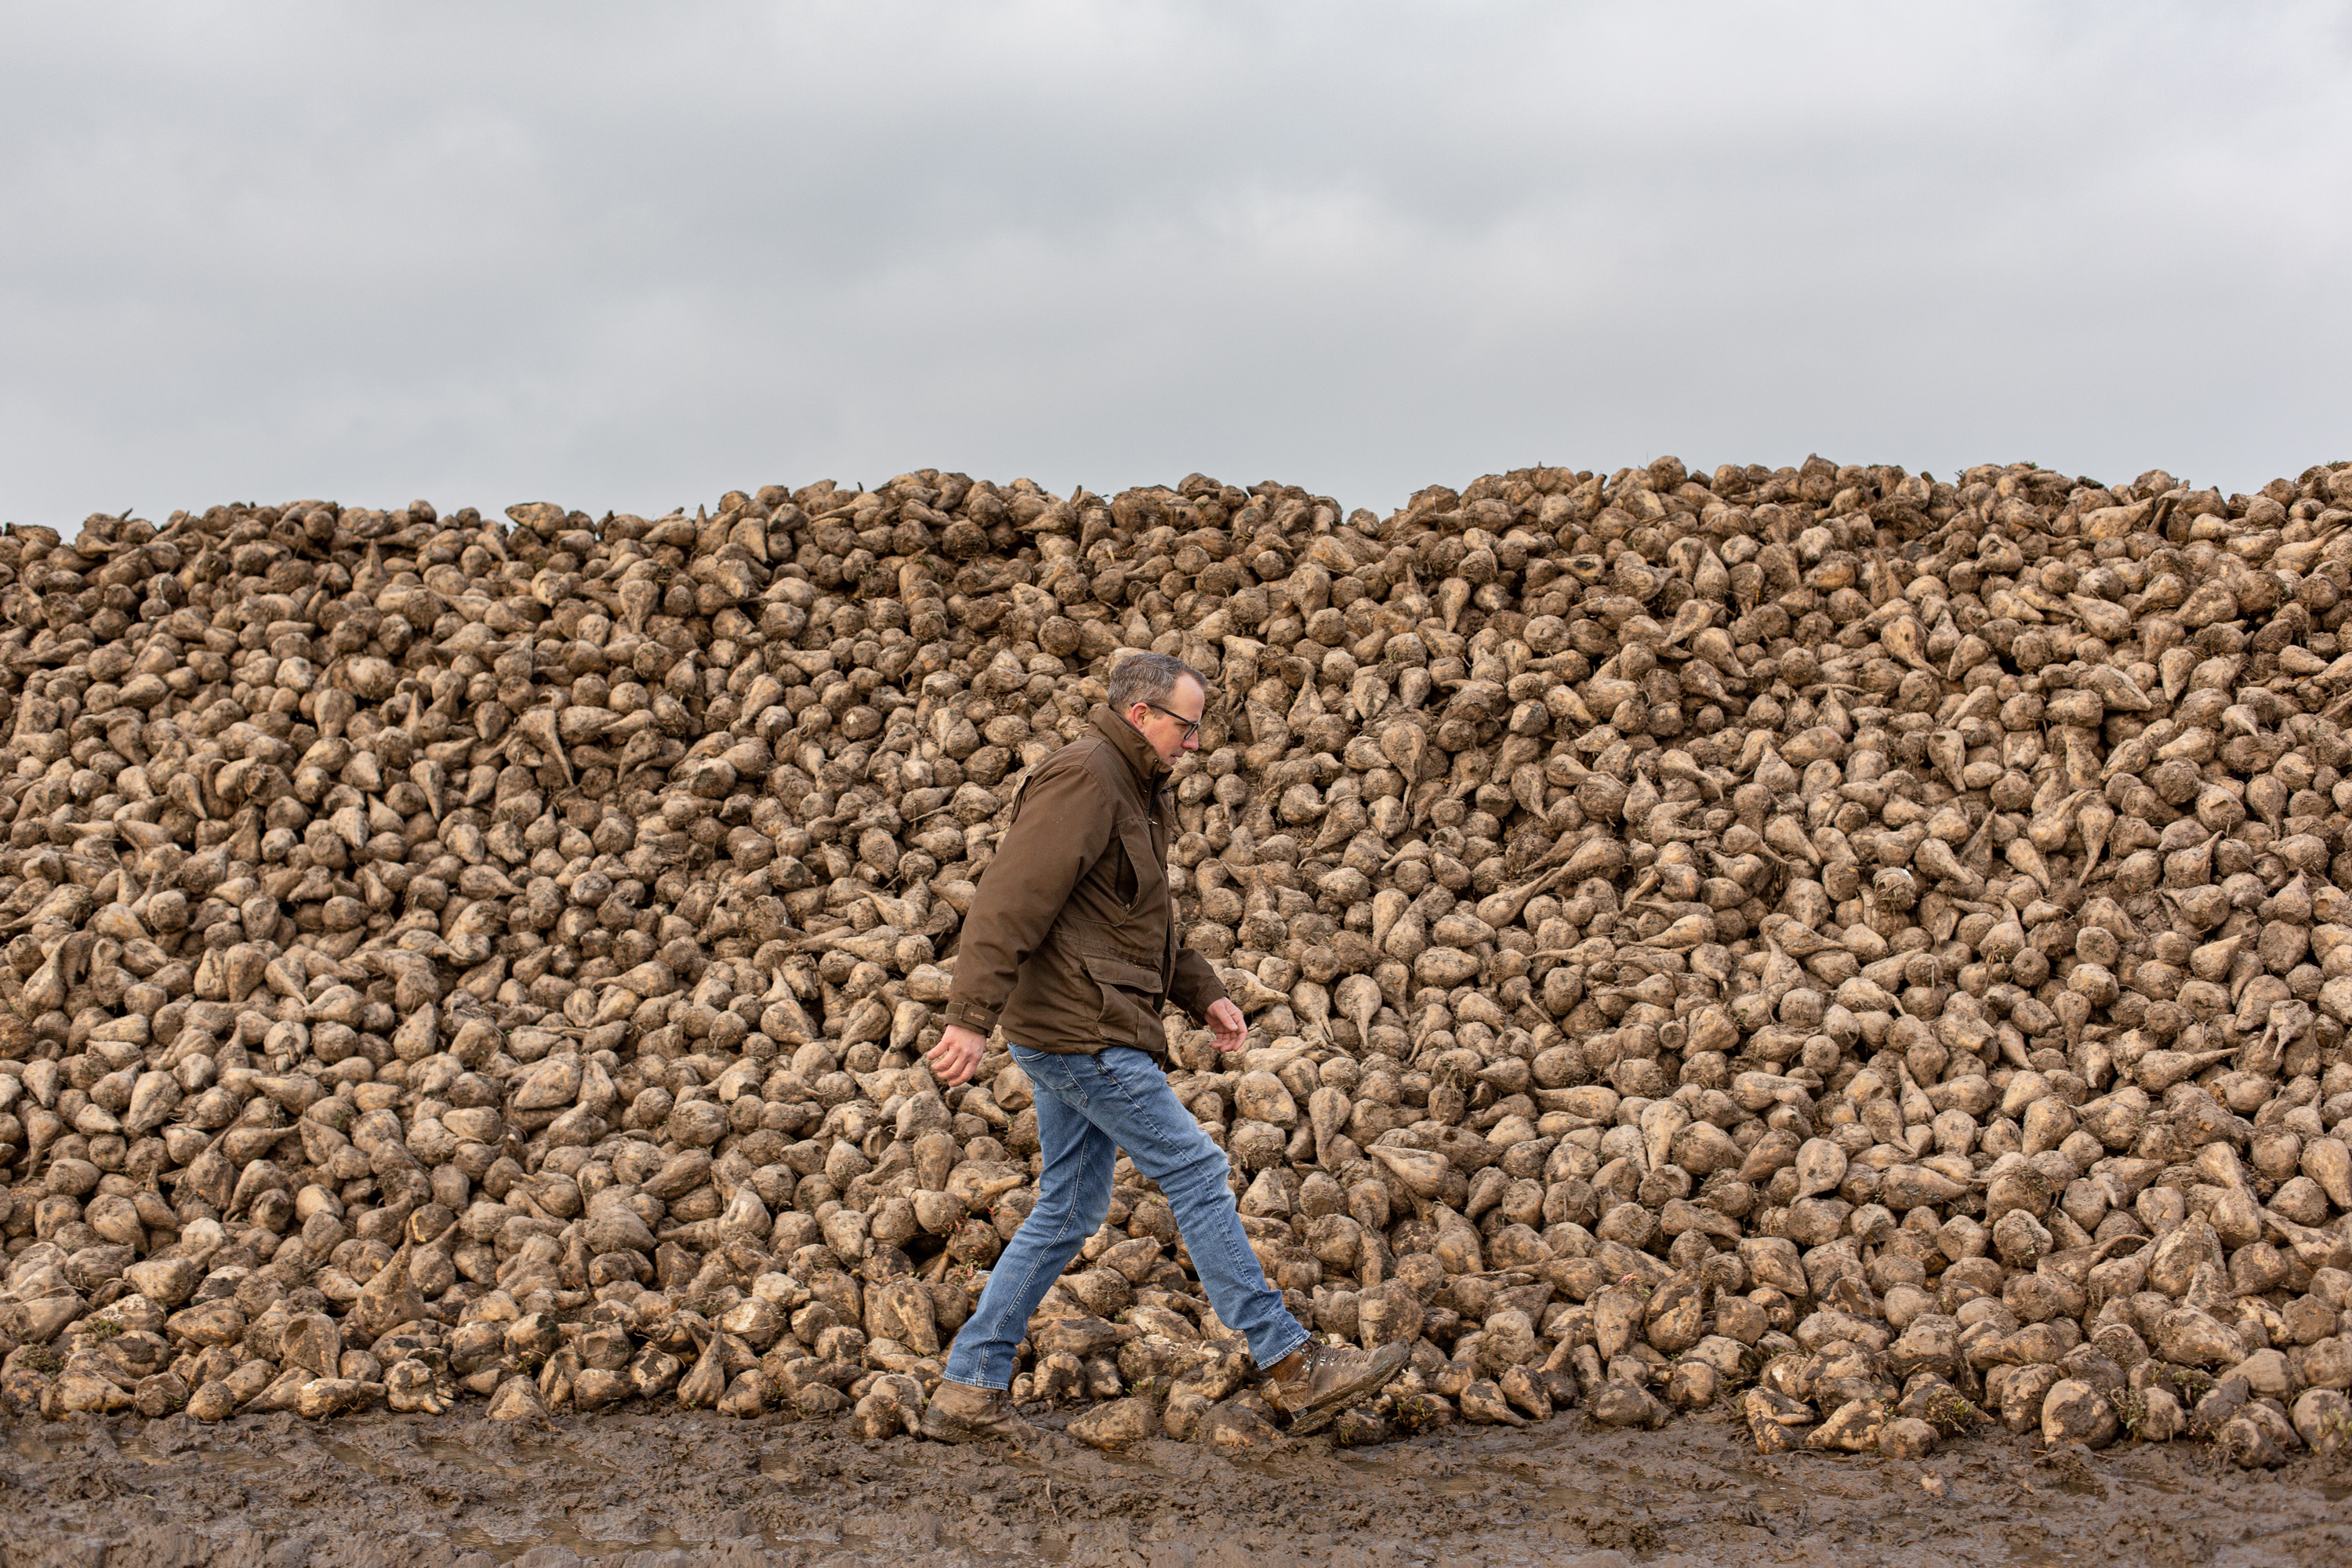 Landwirt Christian Flögel geht an einer Zuckerrübenmiete entlang. Miete nennt man eine Lagerform von Schüttgütern.